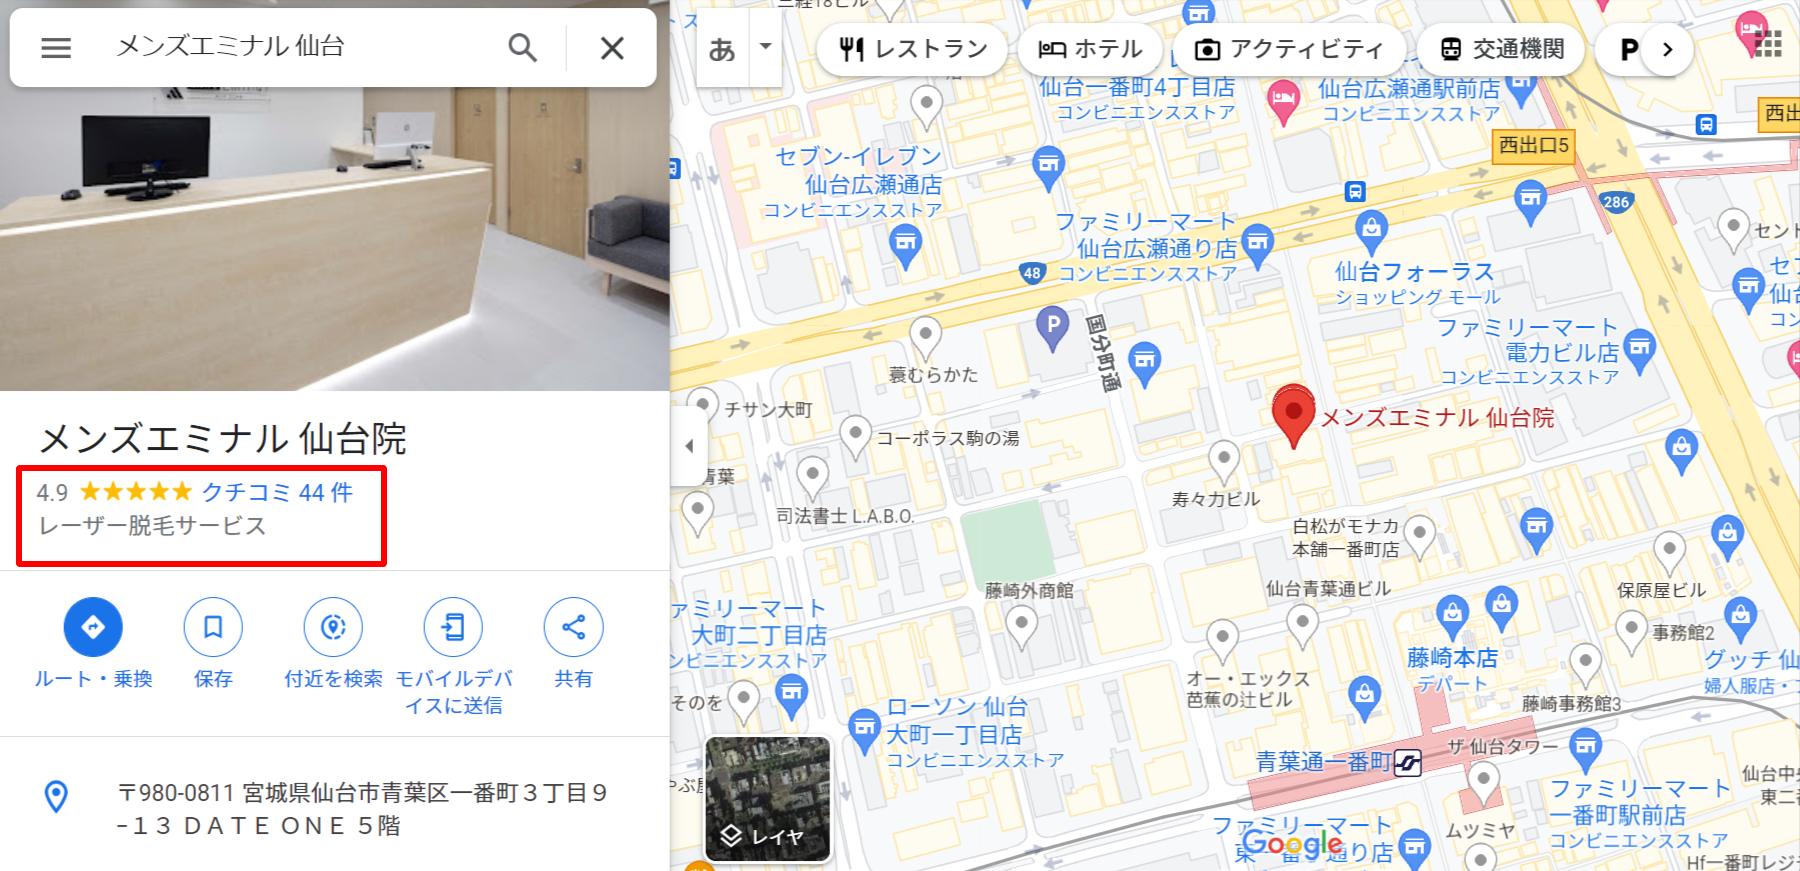 メンズエミナル-仙台院-Google-マップ